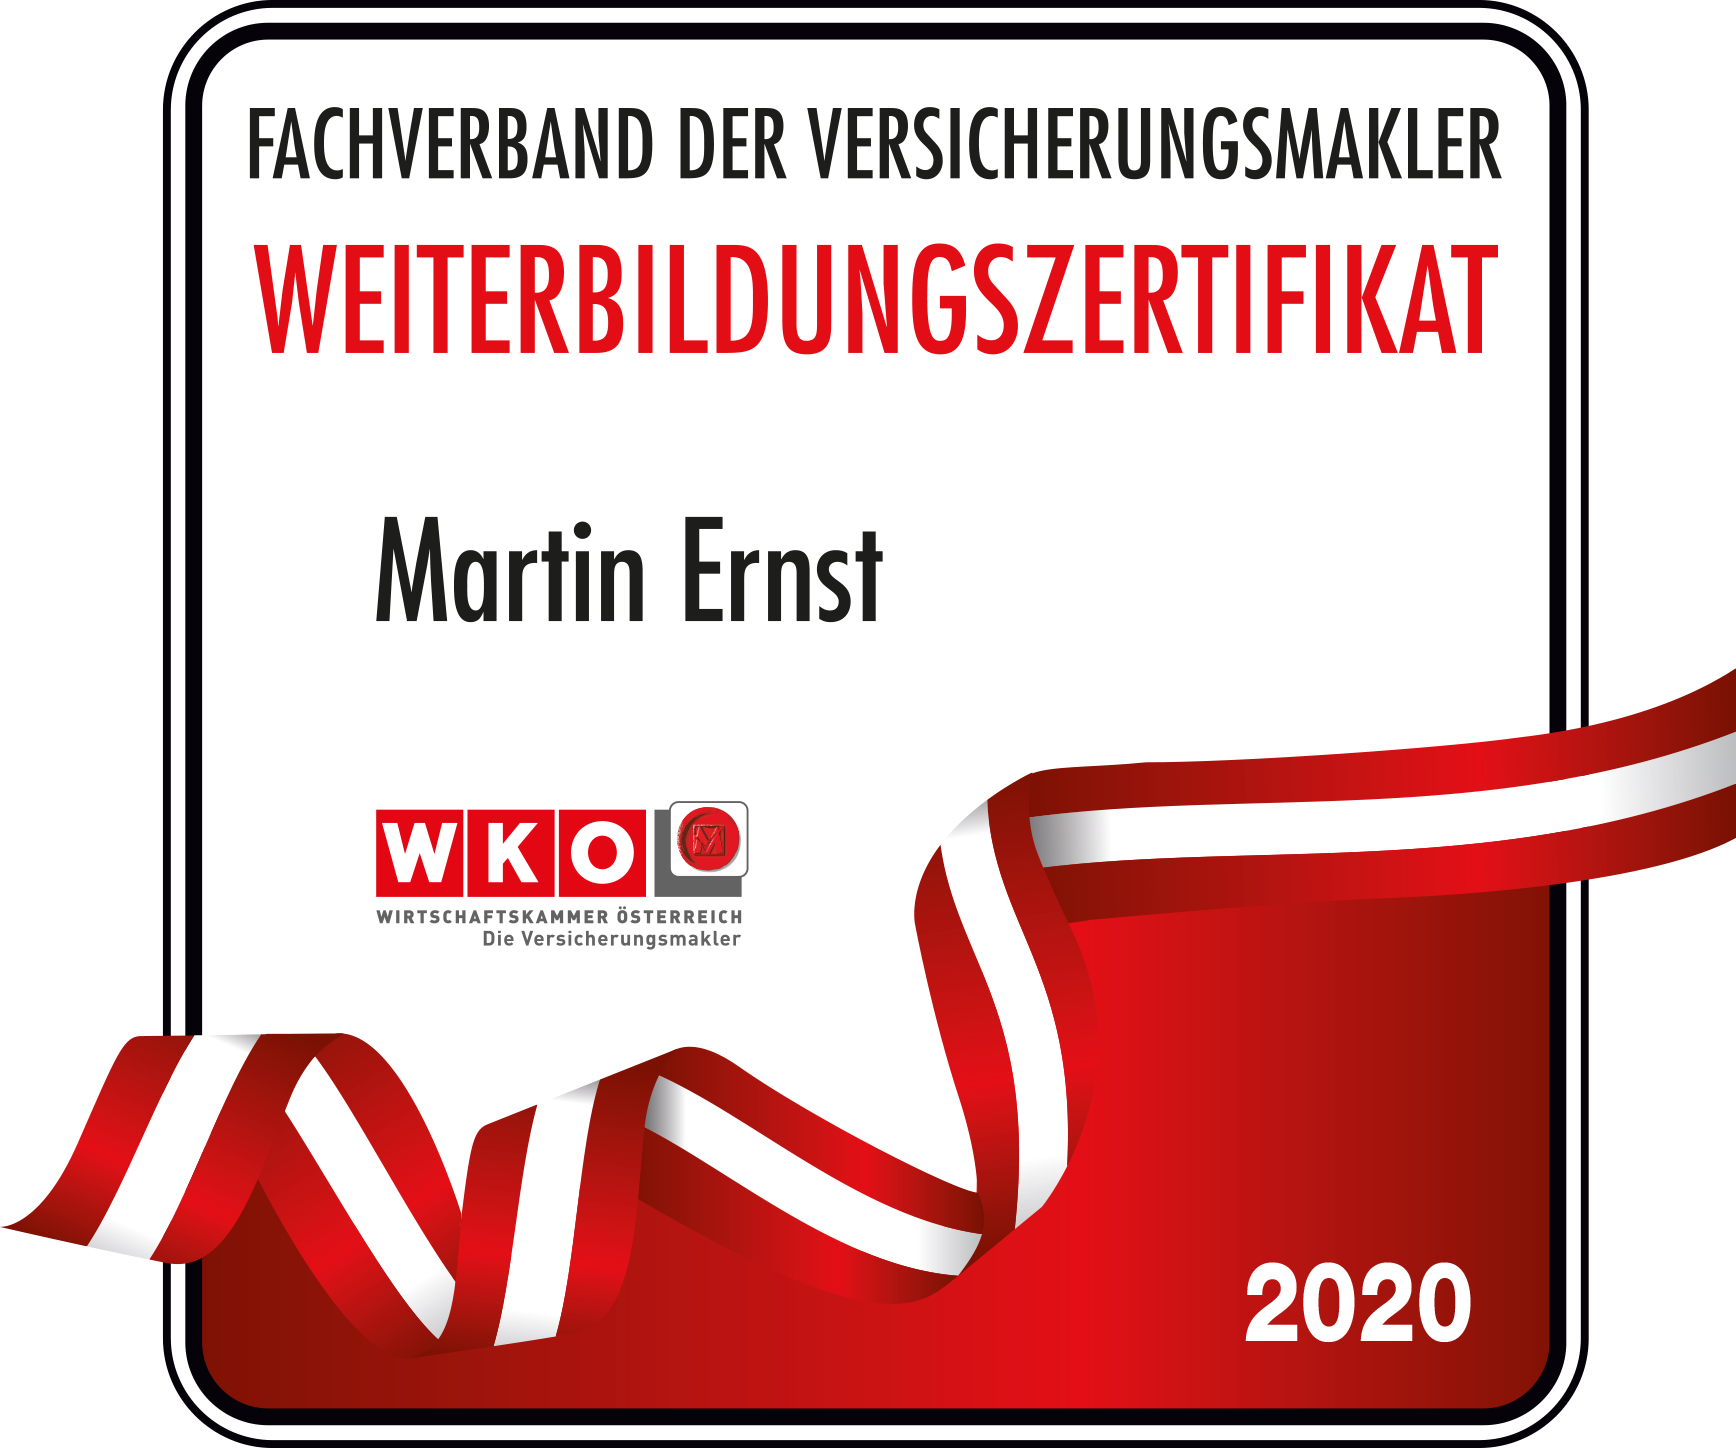 Weiterbildungszertifikat 2020 Martin Ernst